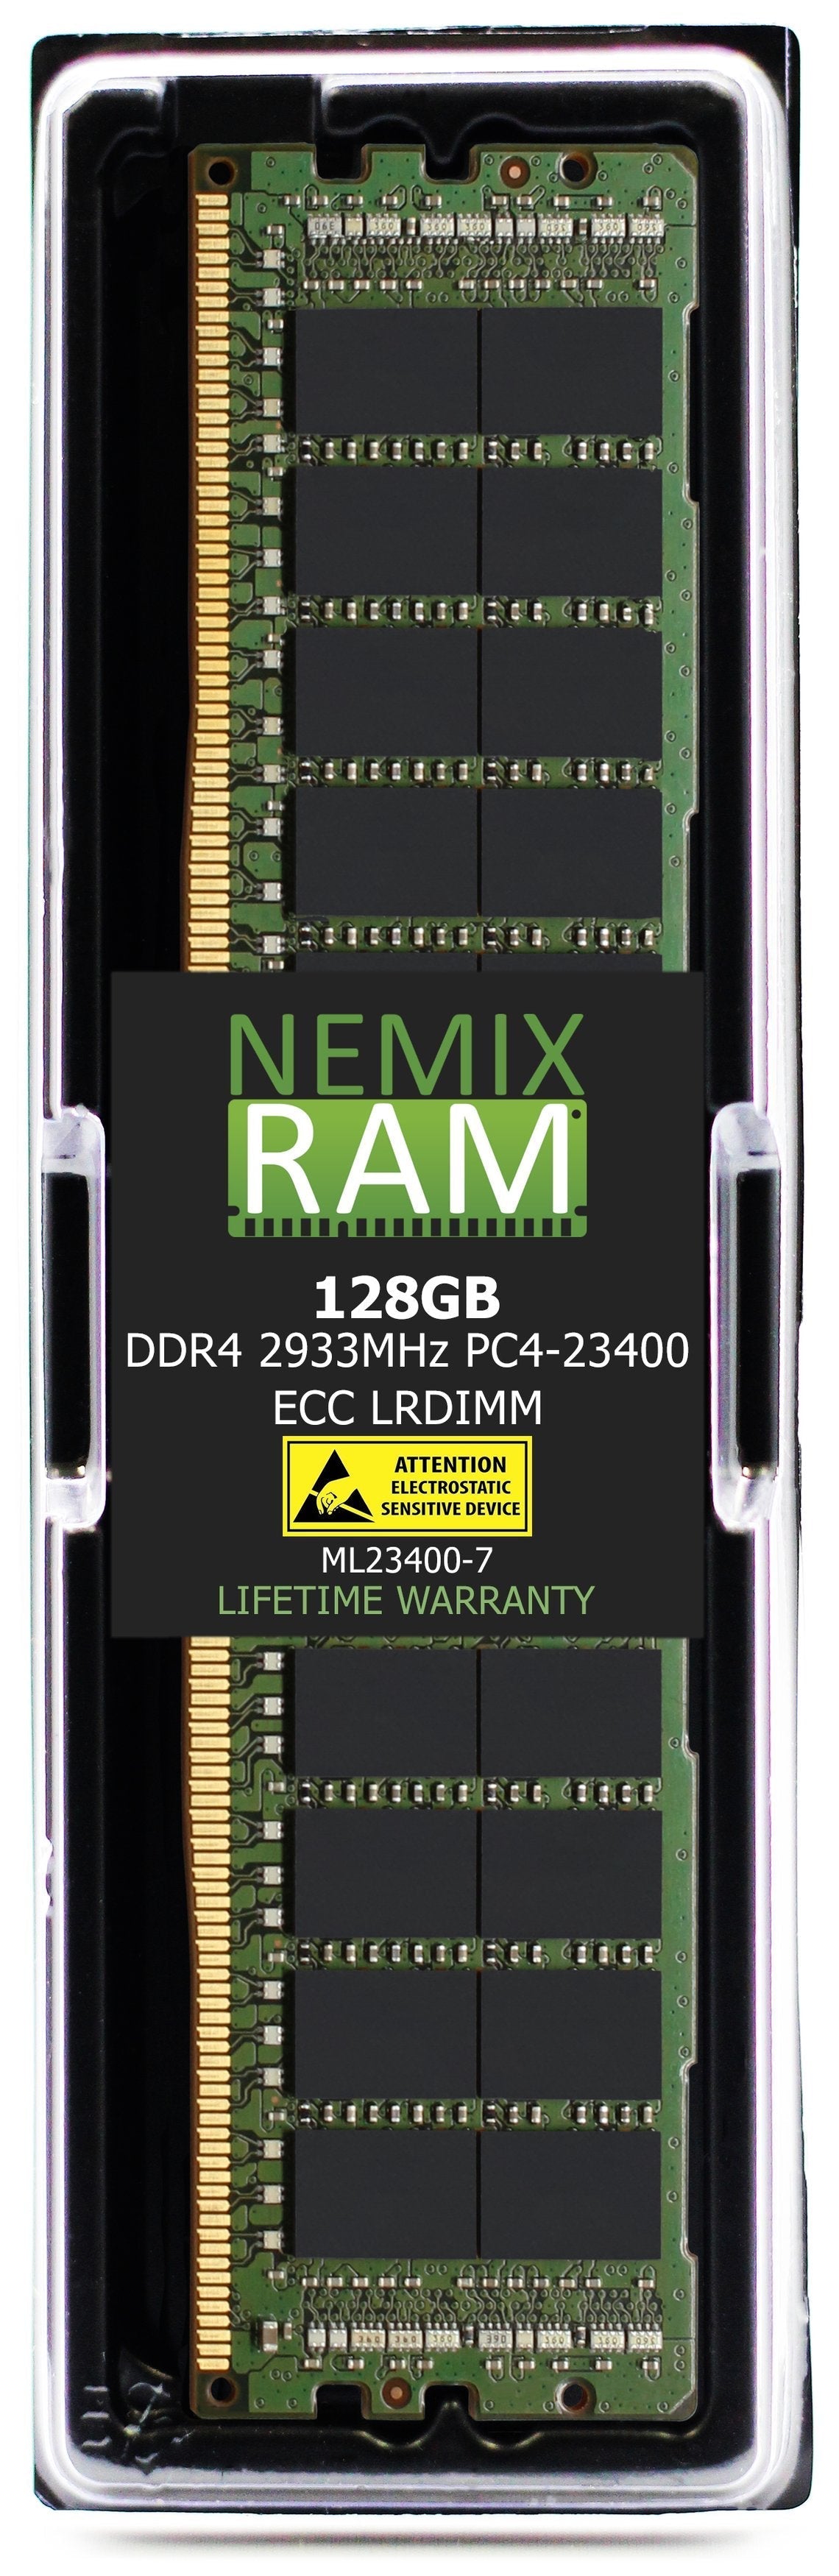 LRDIMM DDR4-2933 PC4-23400